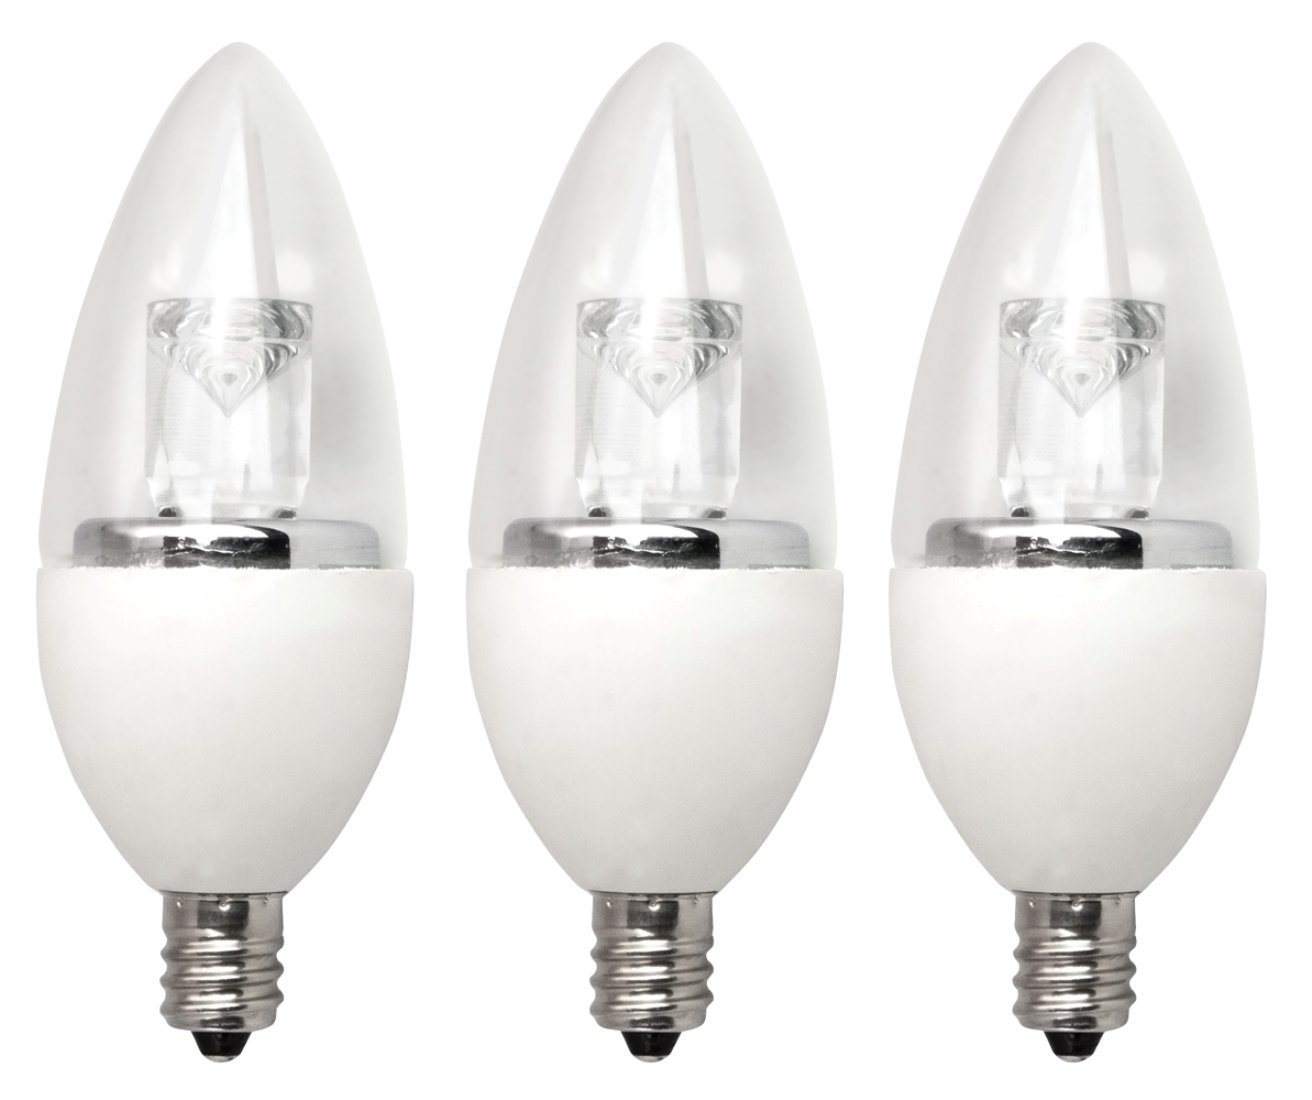 Clients Edging Towards Led Light Bulbs